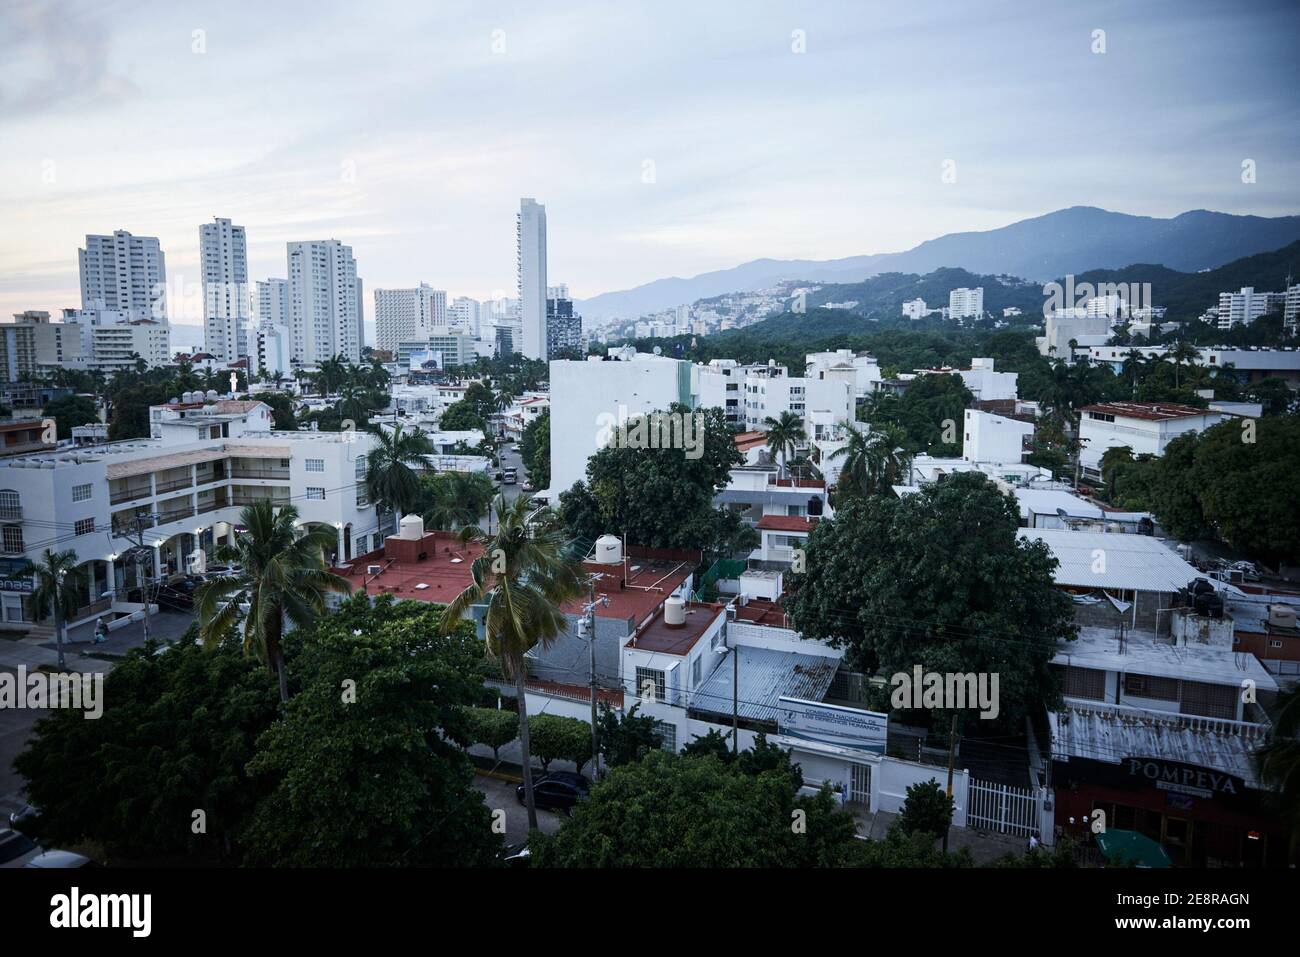 Die Landschaft und das Stadtbild der Stadt Acapulco im mexikanischen Bundesstaat Guerrero. Stockfoto